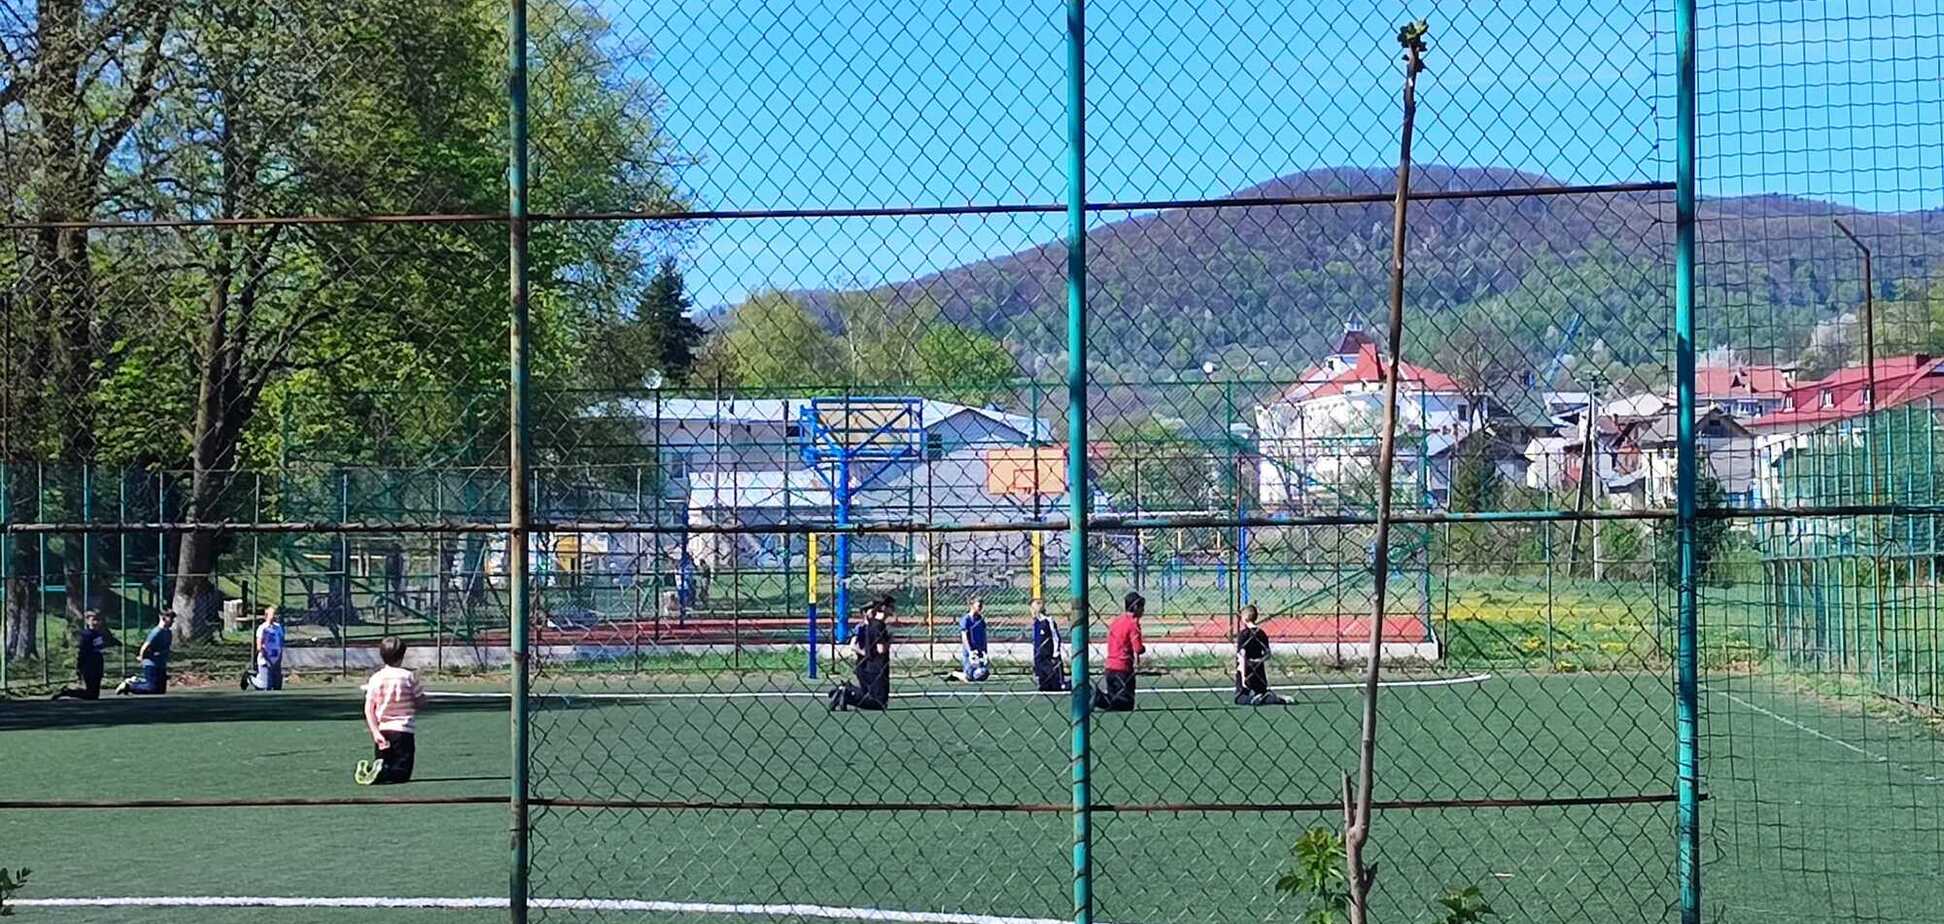 Перестали играть в футбол и стали на колени. Фото, как дети встречают Героя 'на щите', растрогало сеть